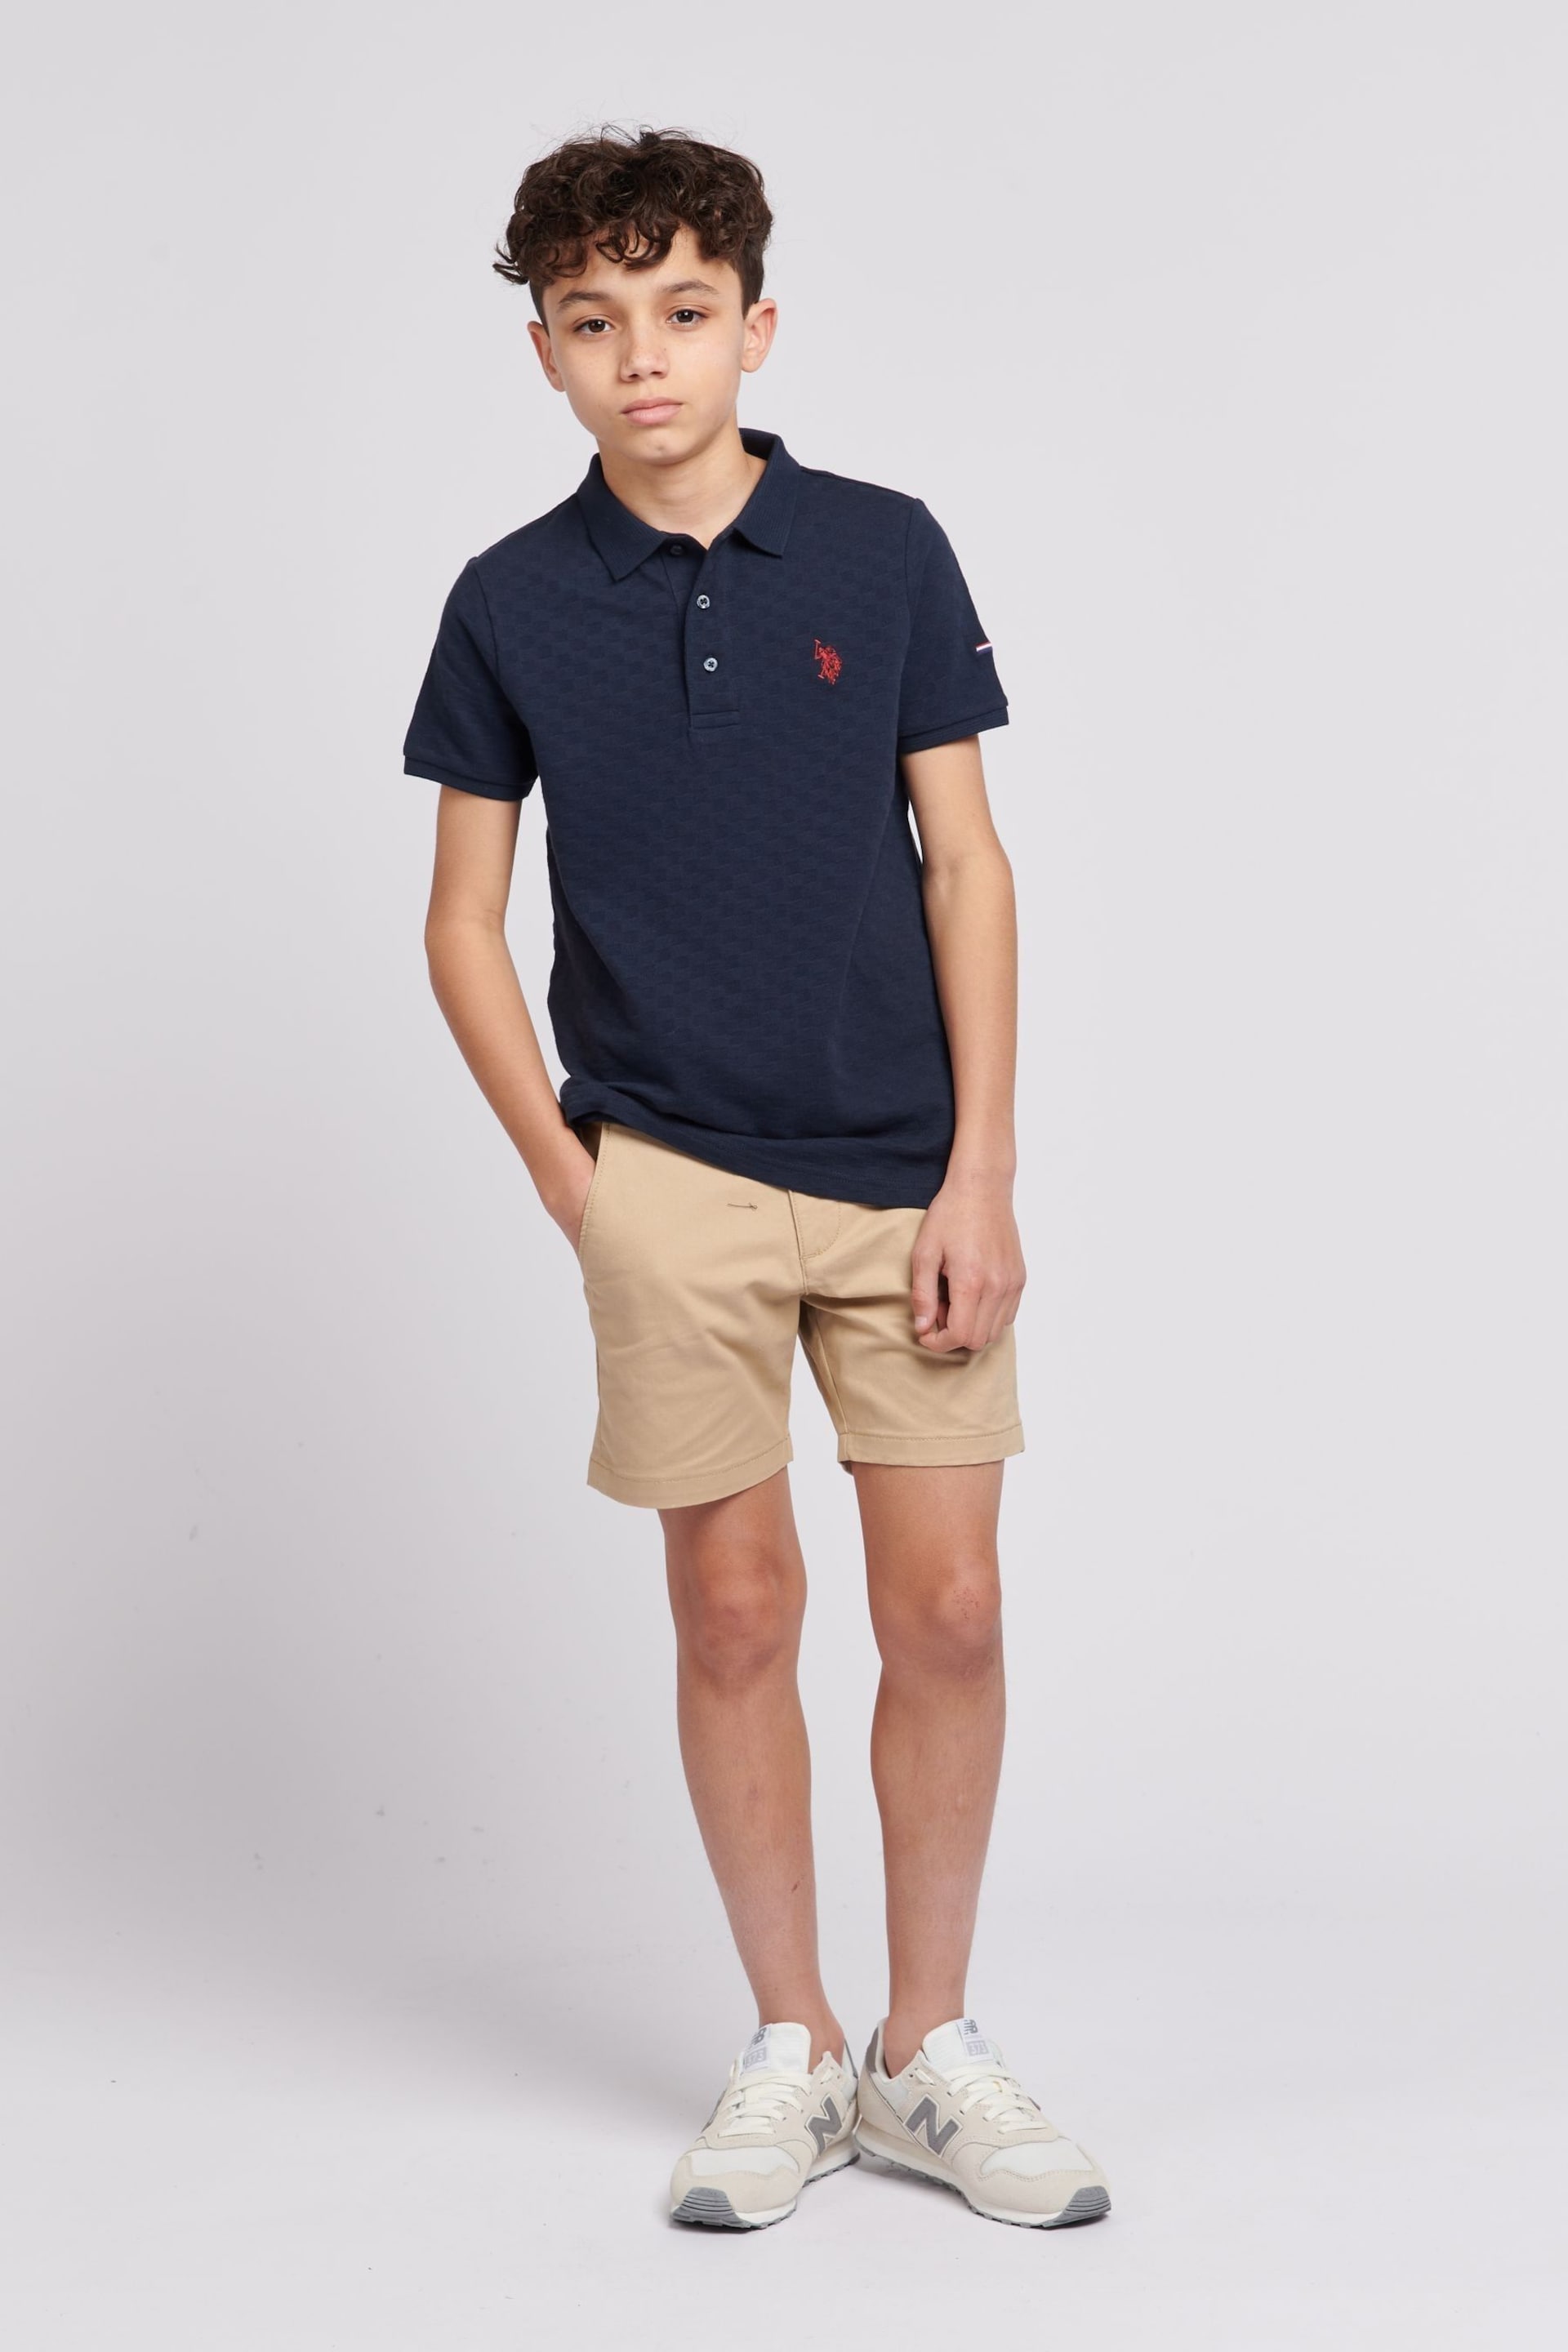 U.S. Polo Assn. Boys Blue Check Texture Polo Shirt - Image 5 of 6